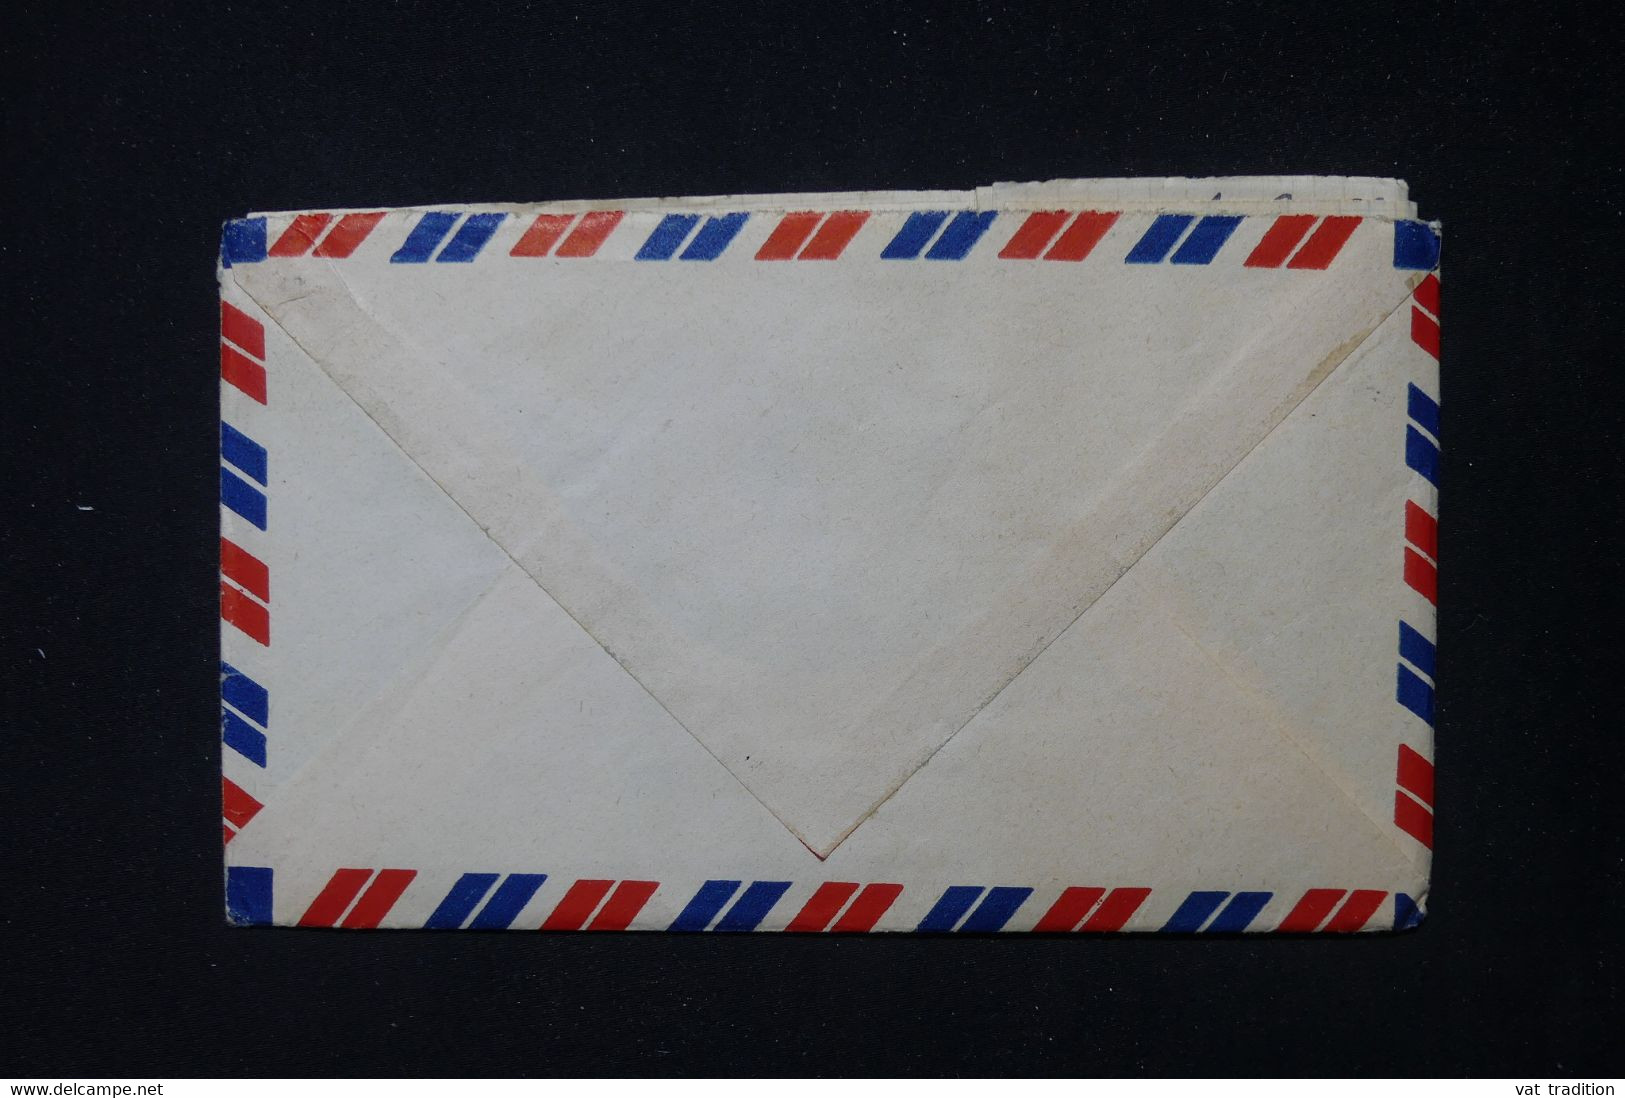 FRANCE / INDOCHINE - Enveloppe Avec Contenu D'un Marin En Indochine En 1952 Pour La France - L 83848 - Guerre D'Indochine / Viêt-Nam